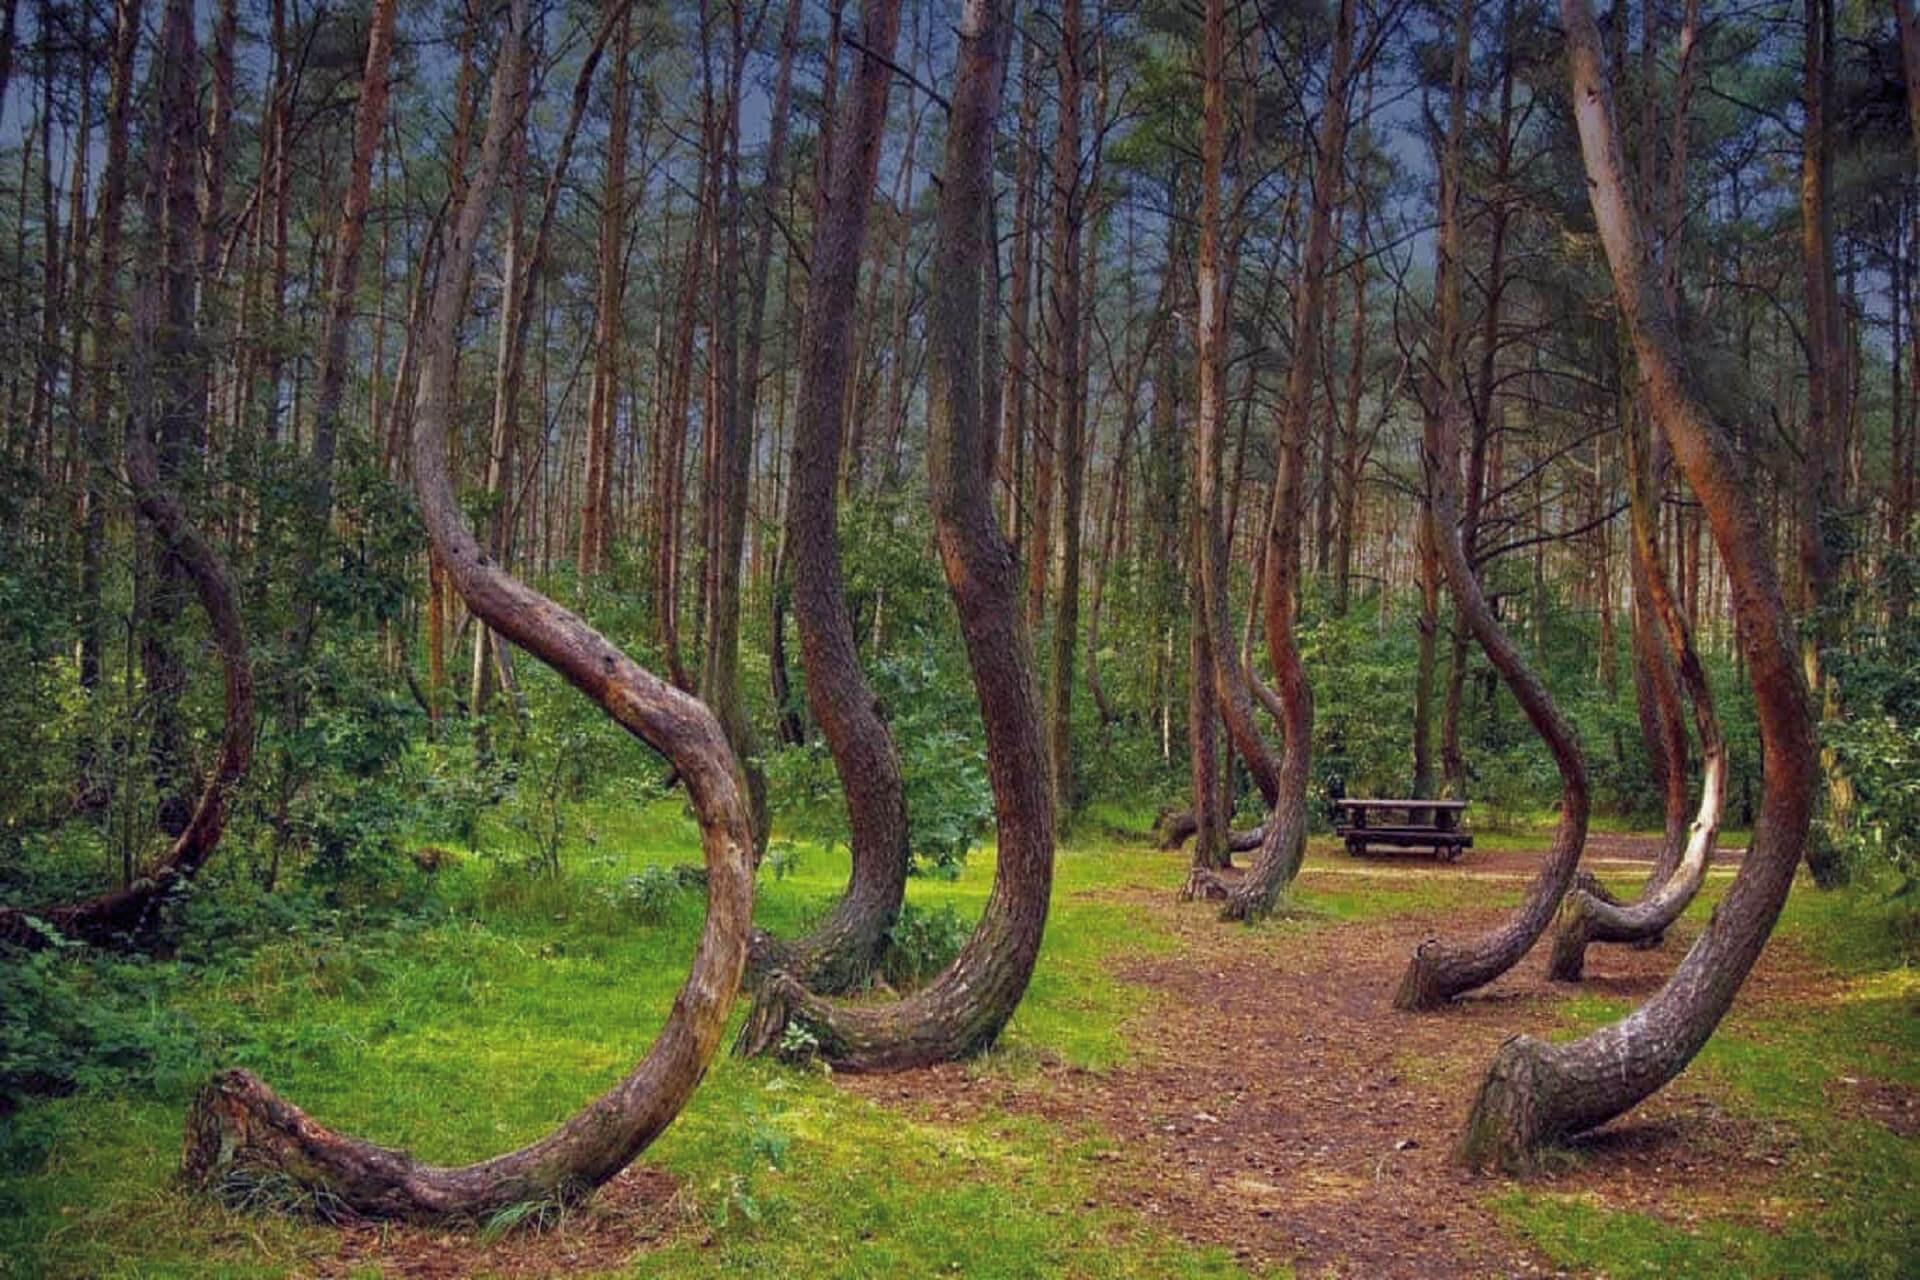 Hoia baciu forest, Romania